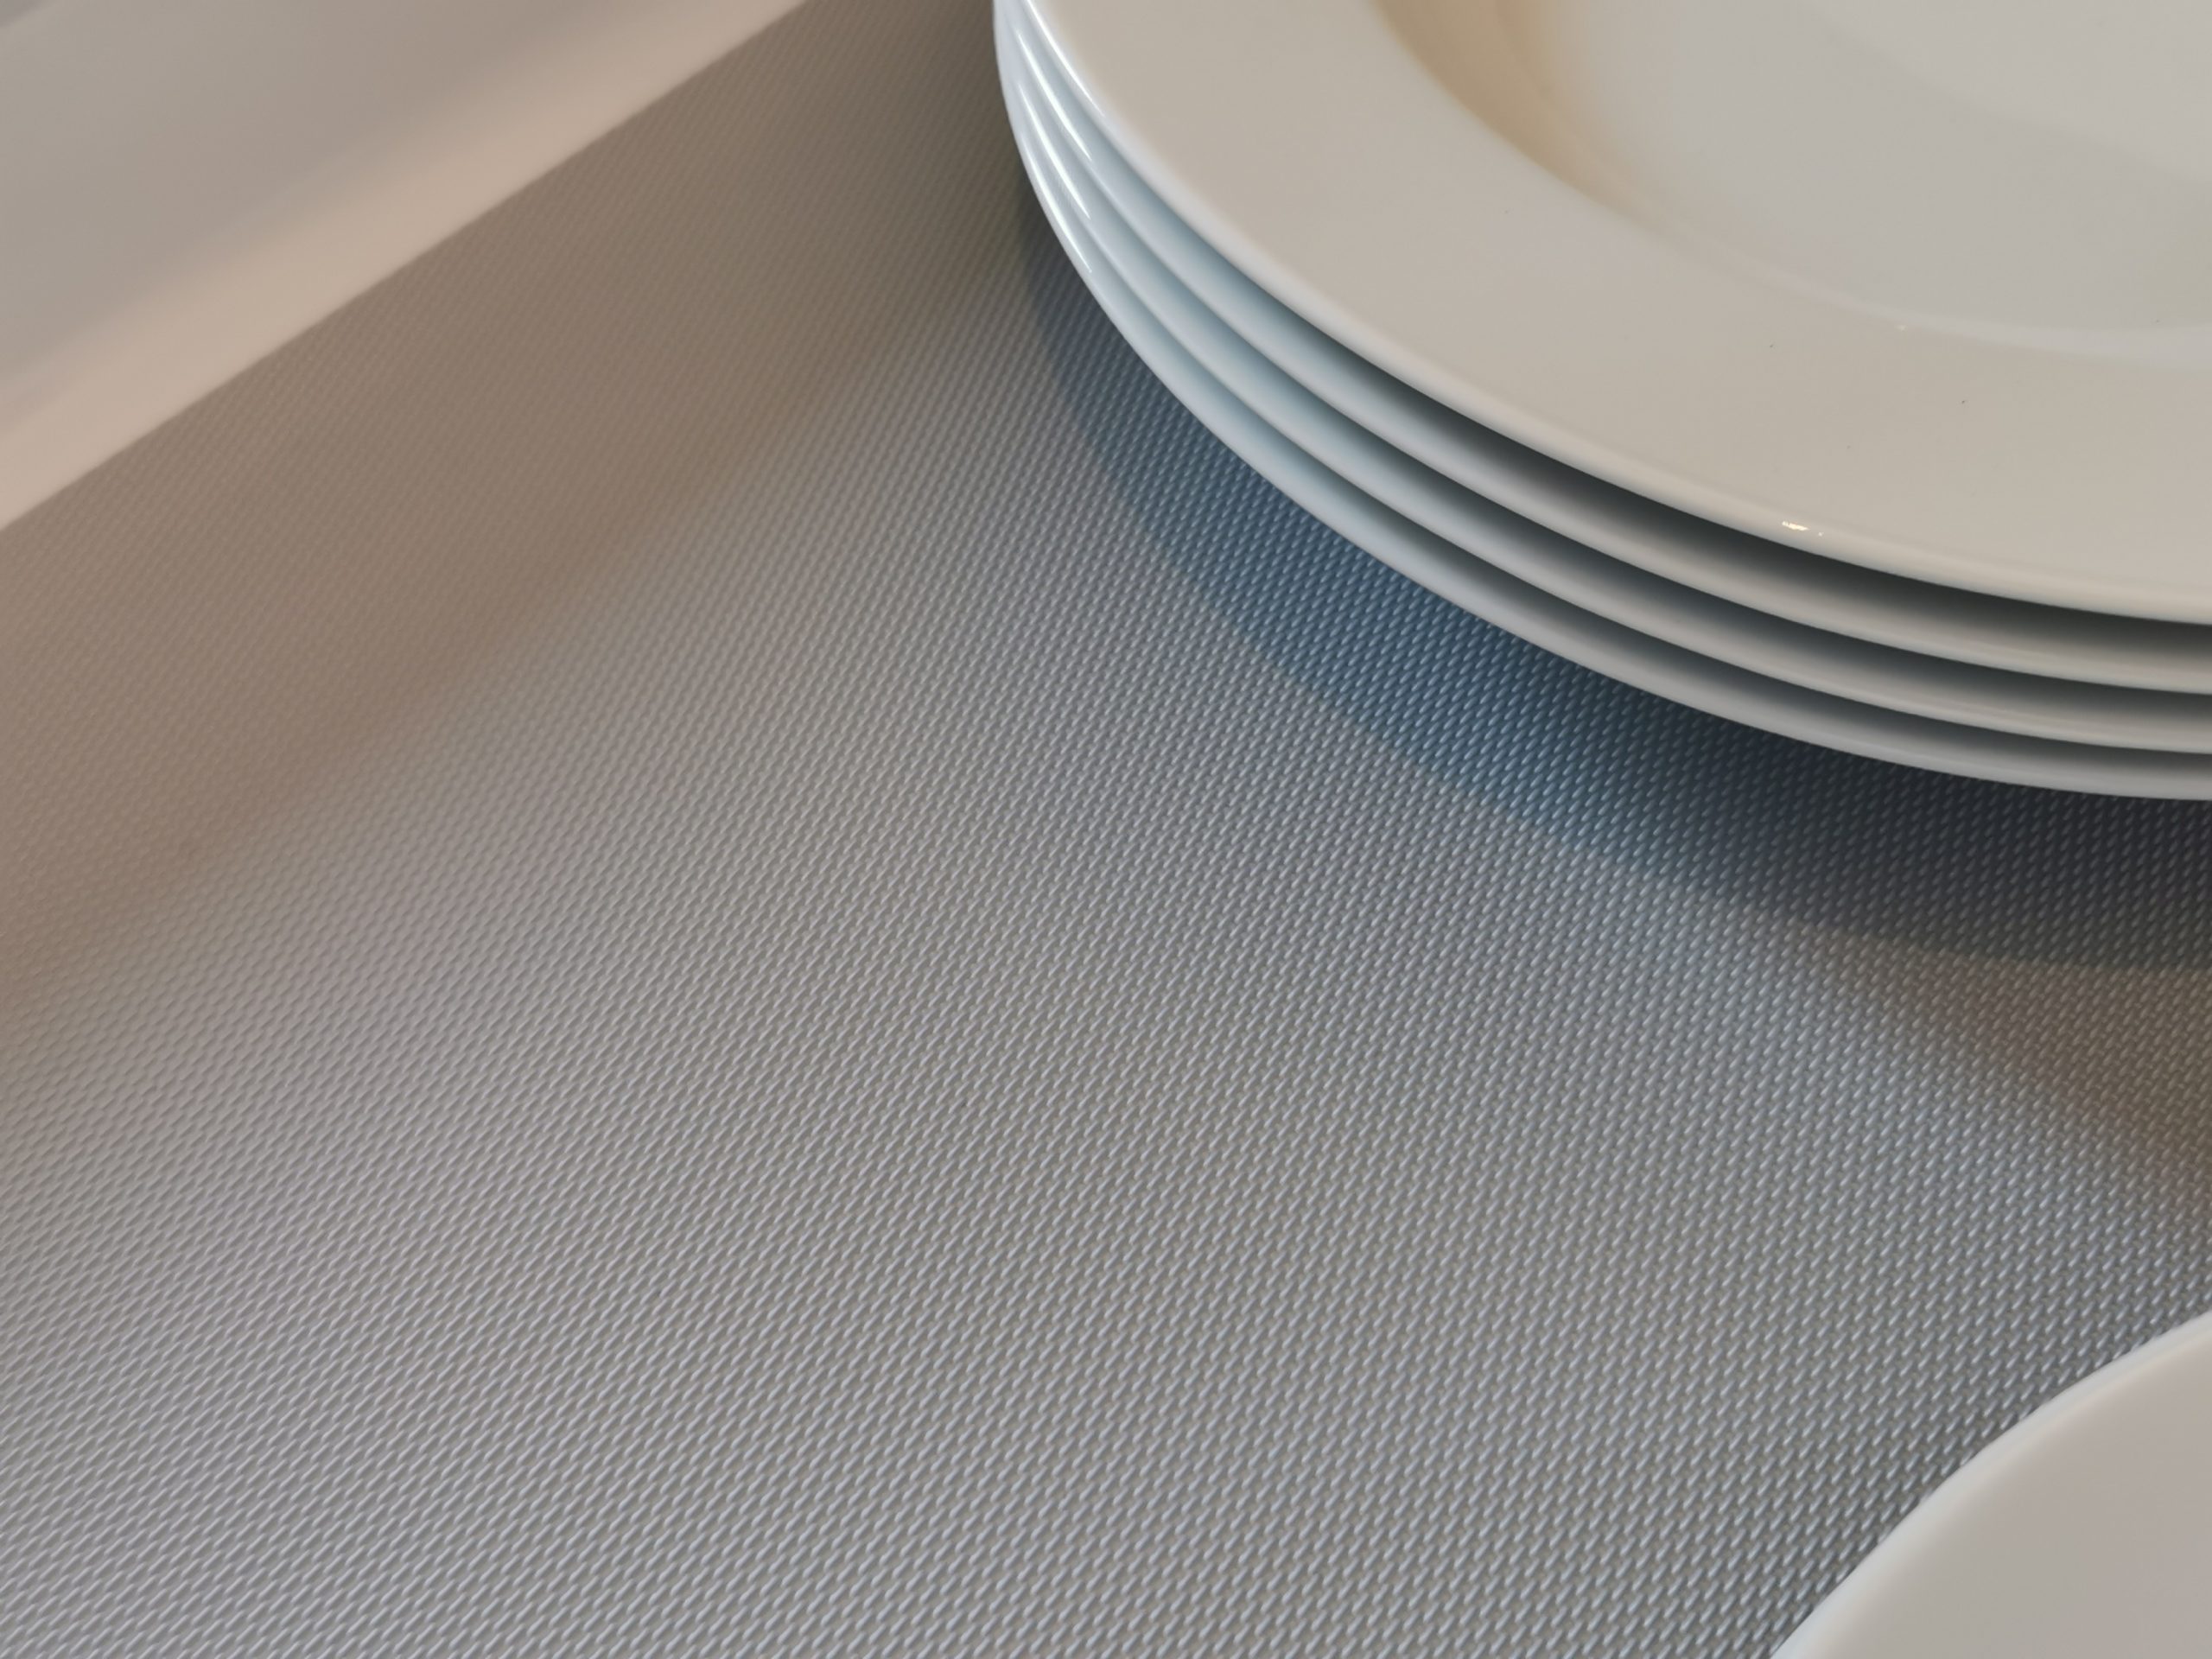 Antirutschmatten passgenau für IKEA Schubladen Unterschränke - Noveo -  Designelemente für Küche und Bad